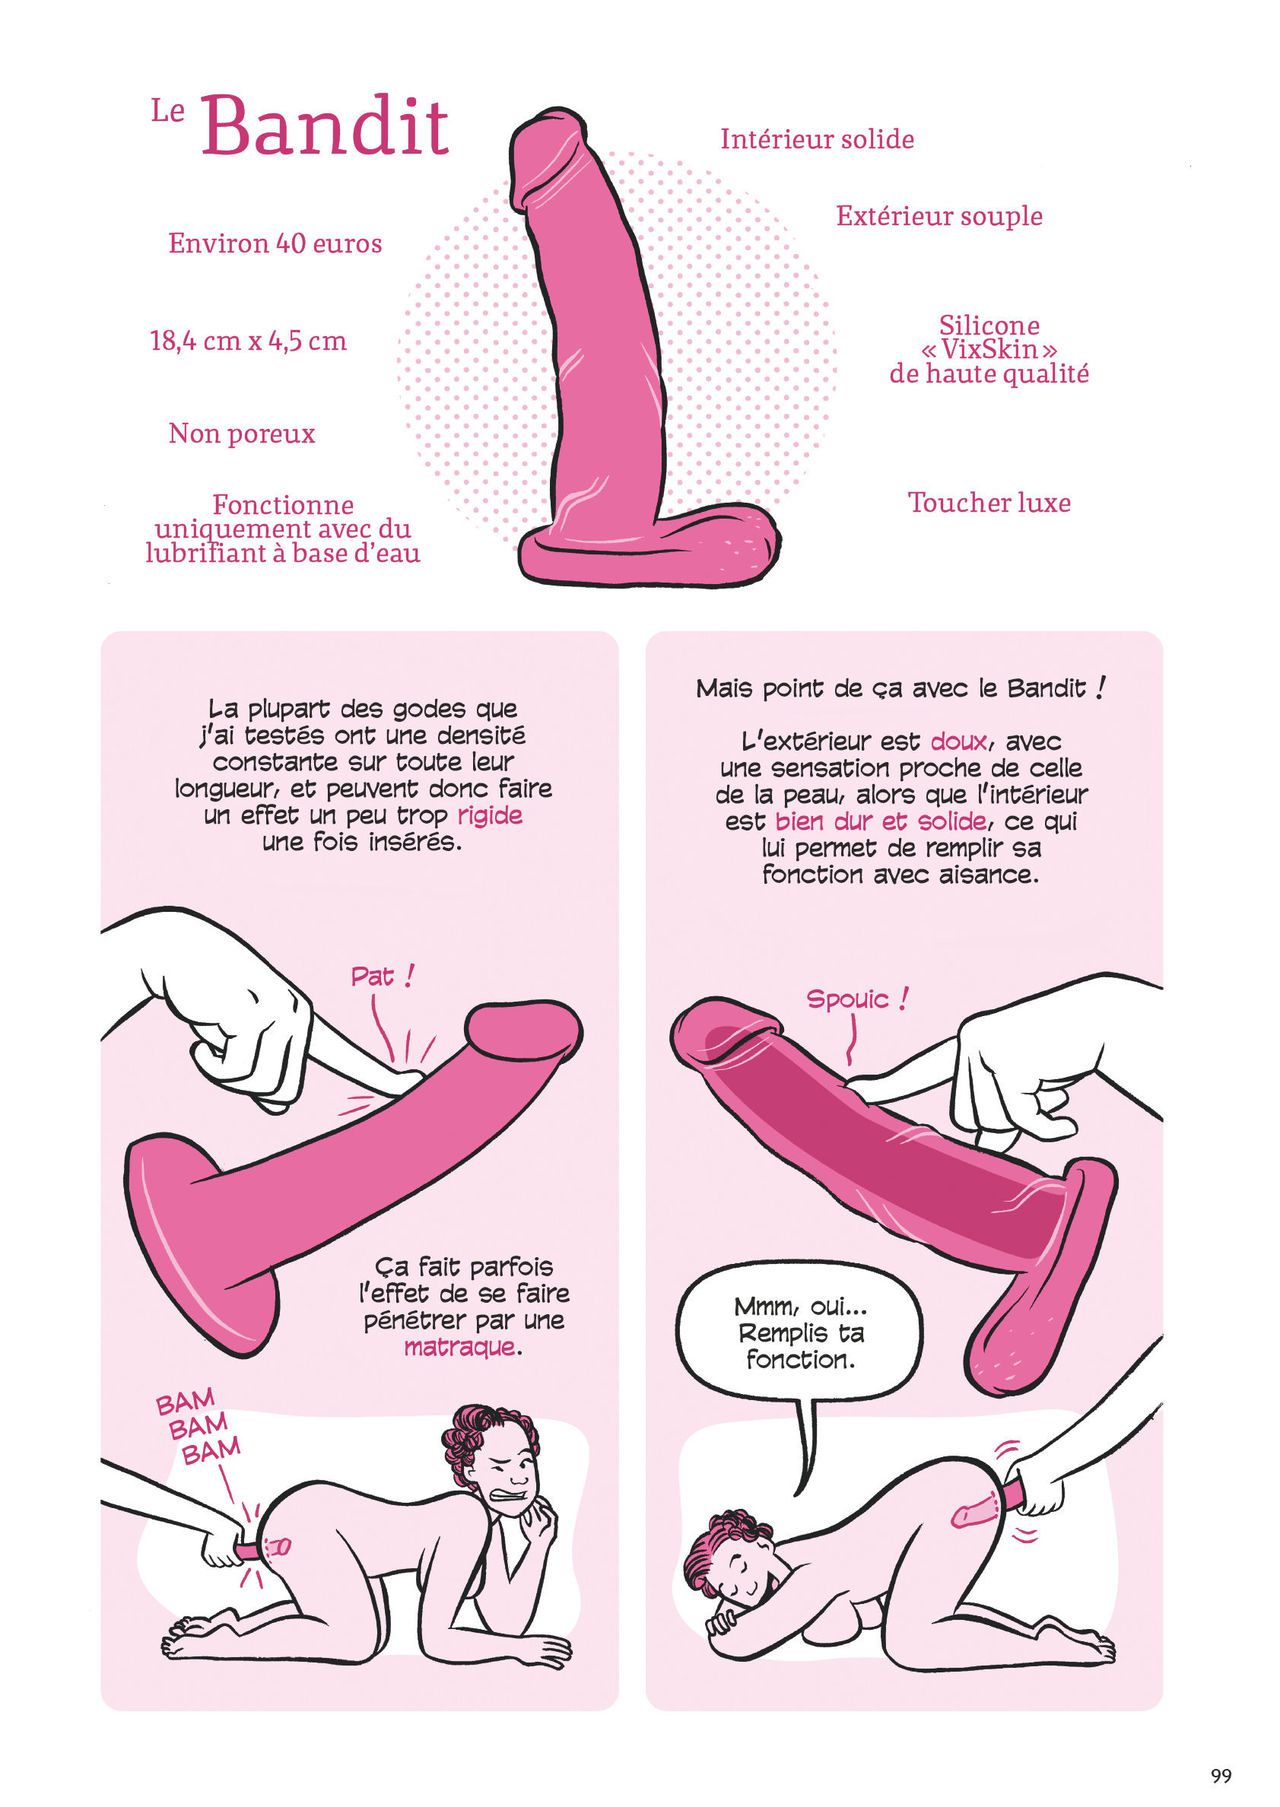 Les Joies du sex-toy et autres pratiques sexuelles [french] 101